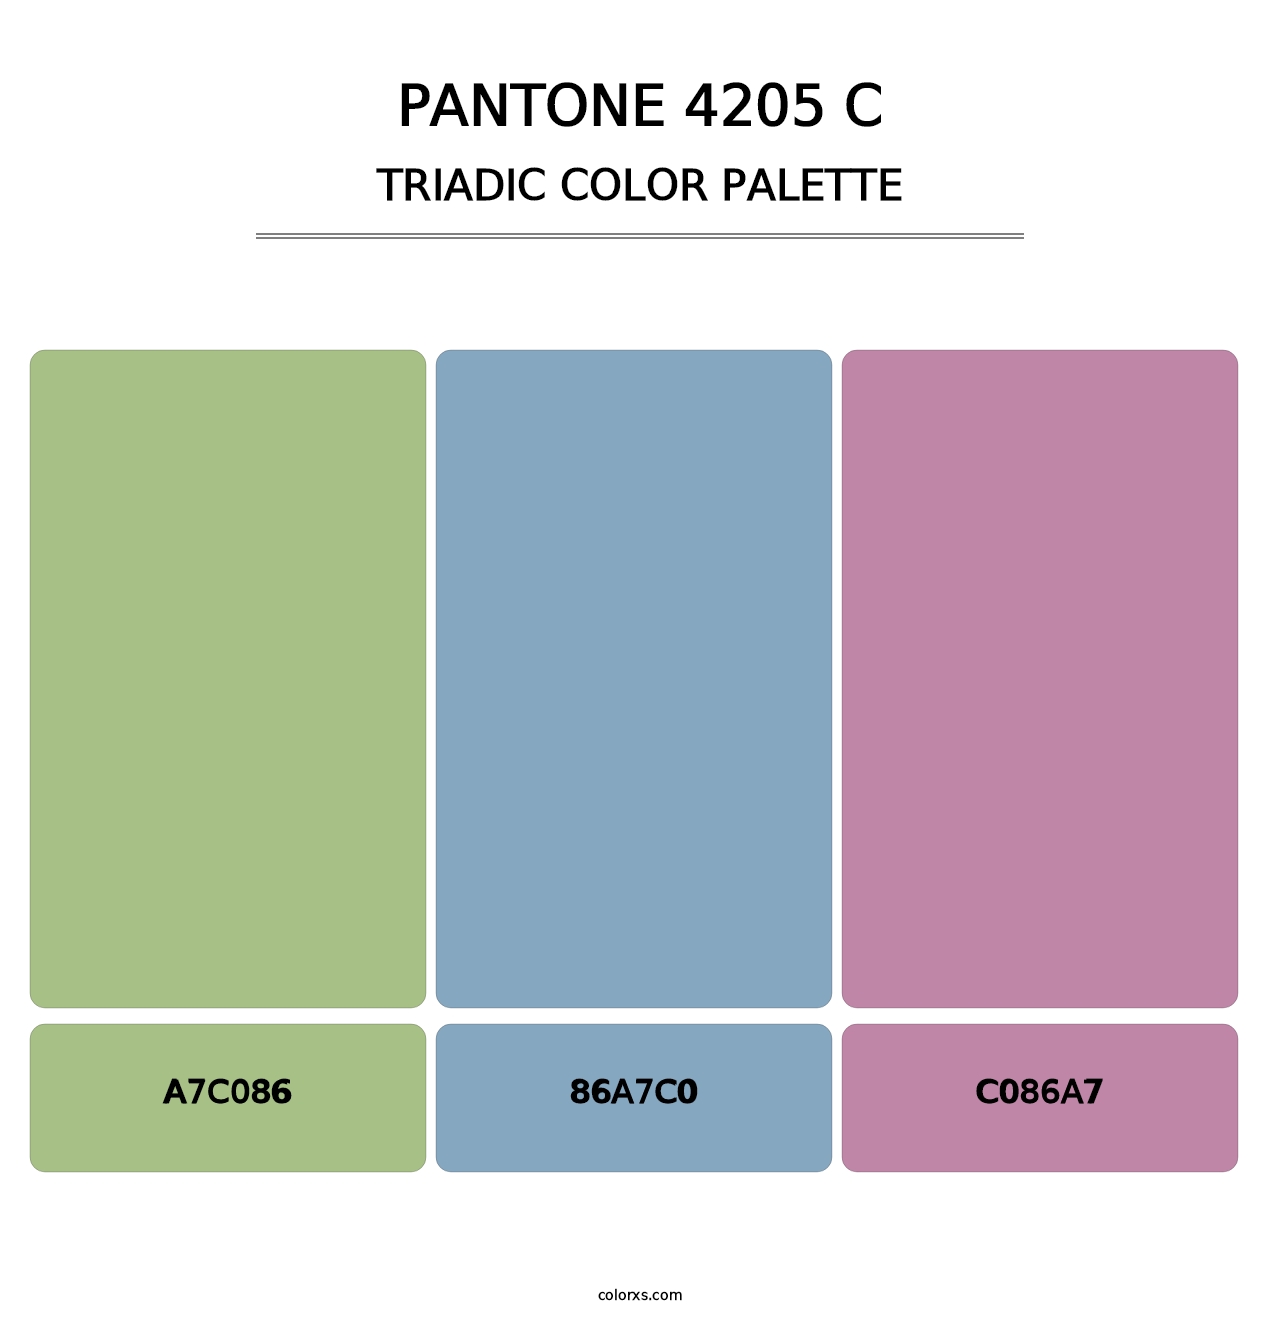 PANTONE 4205 C - Triadic Color Palette